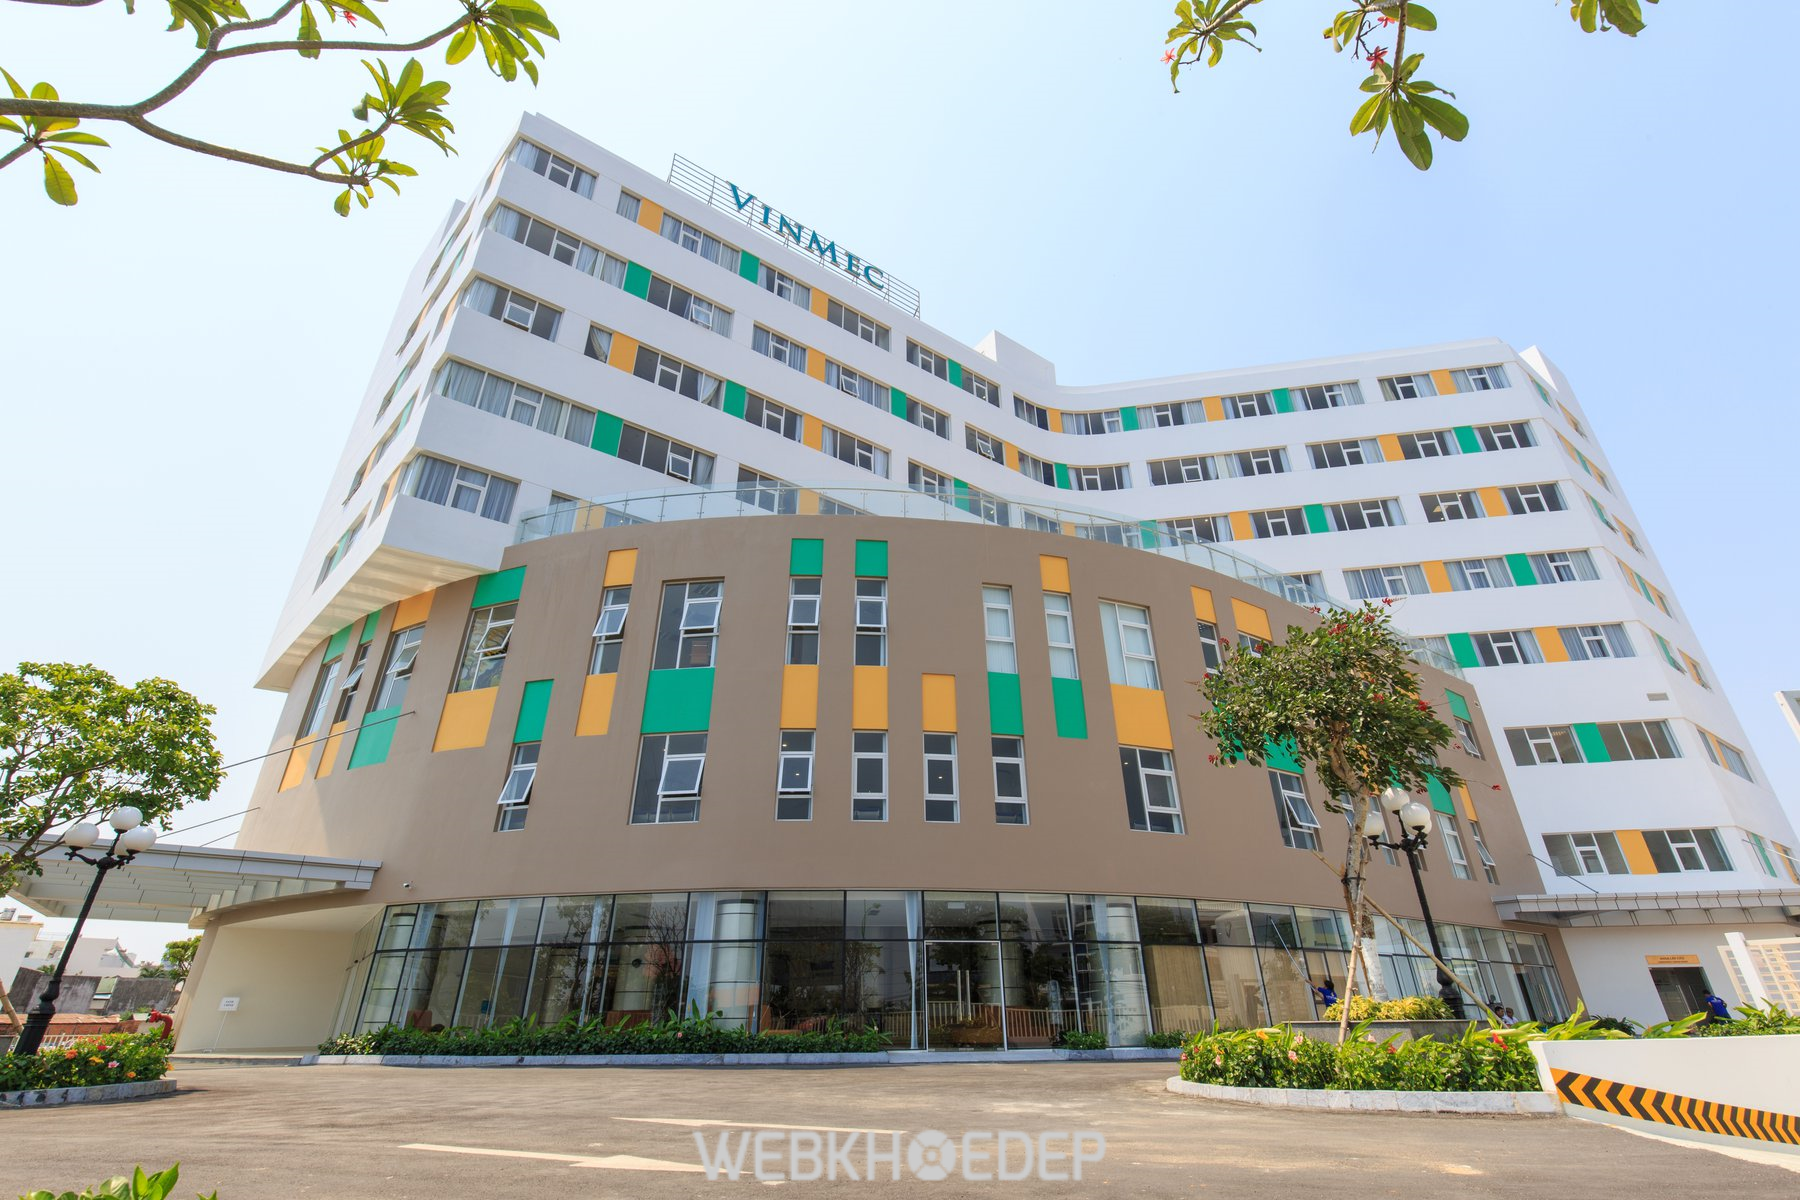 Bệnh viện Vinmec Đà Nẵng khám chẩn đoán ung thư tuyến tiền liệt chuẩn xác